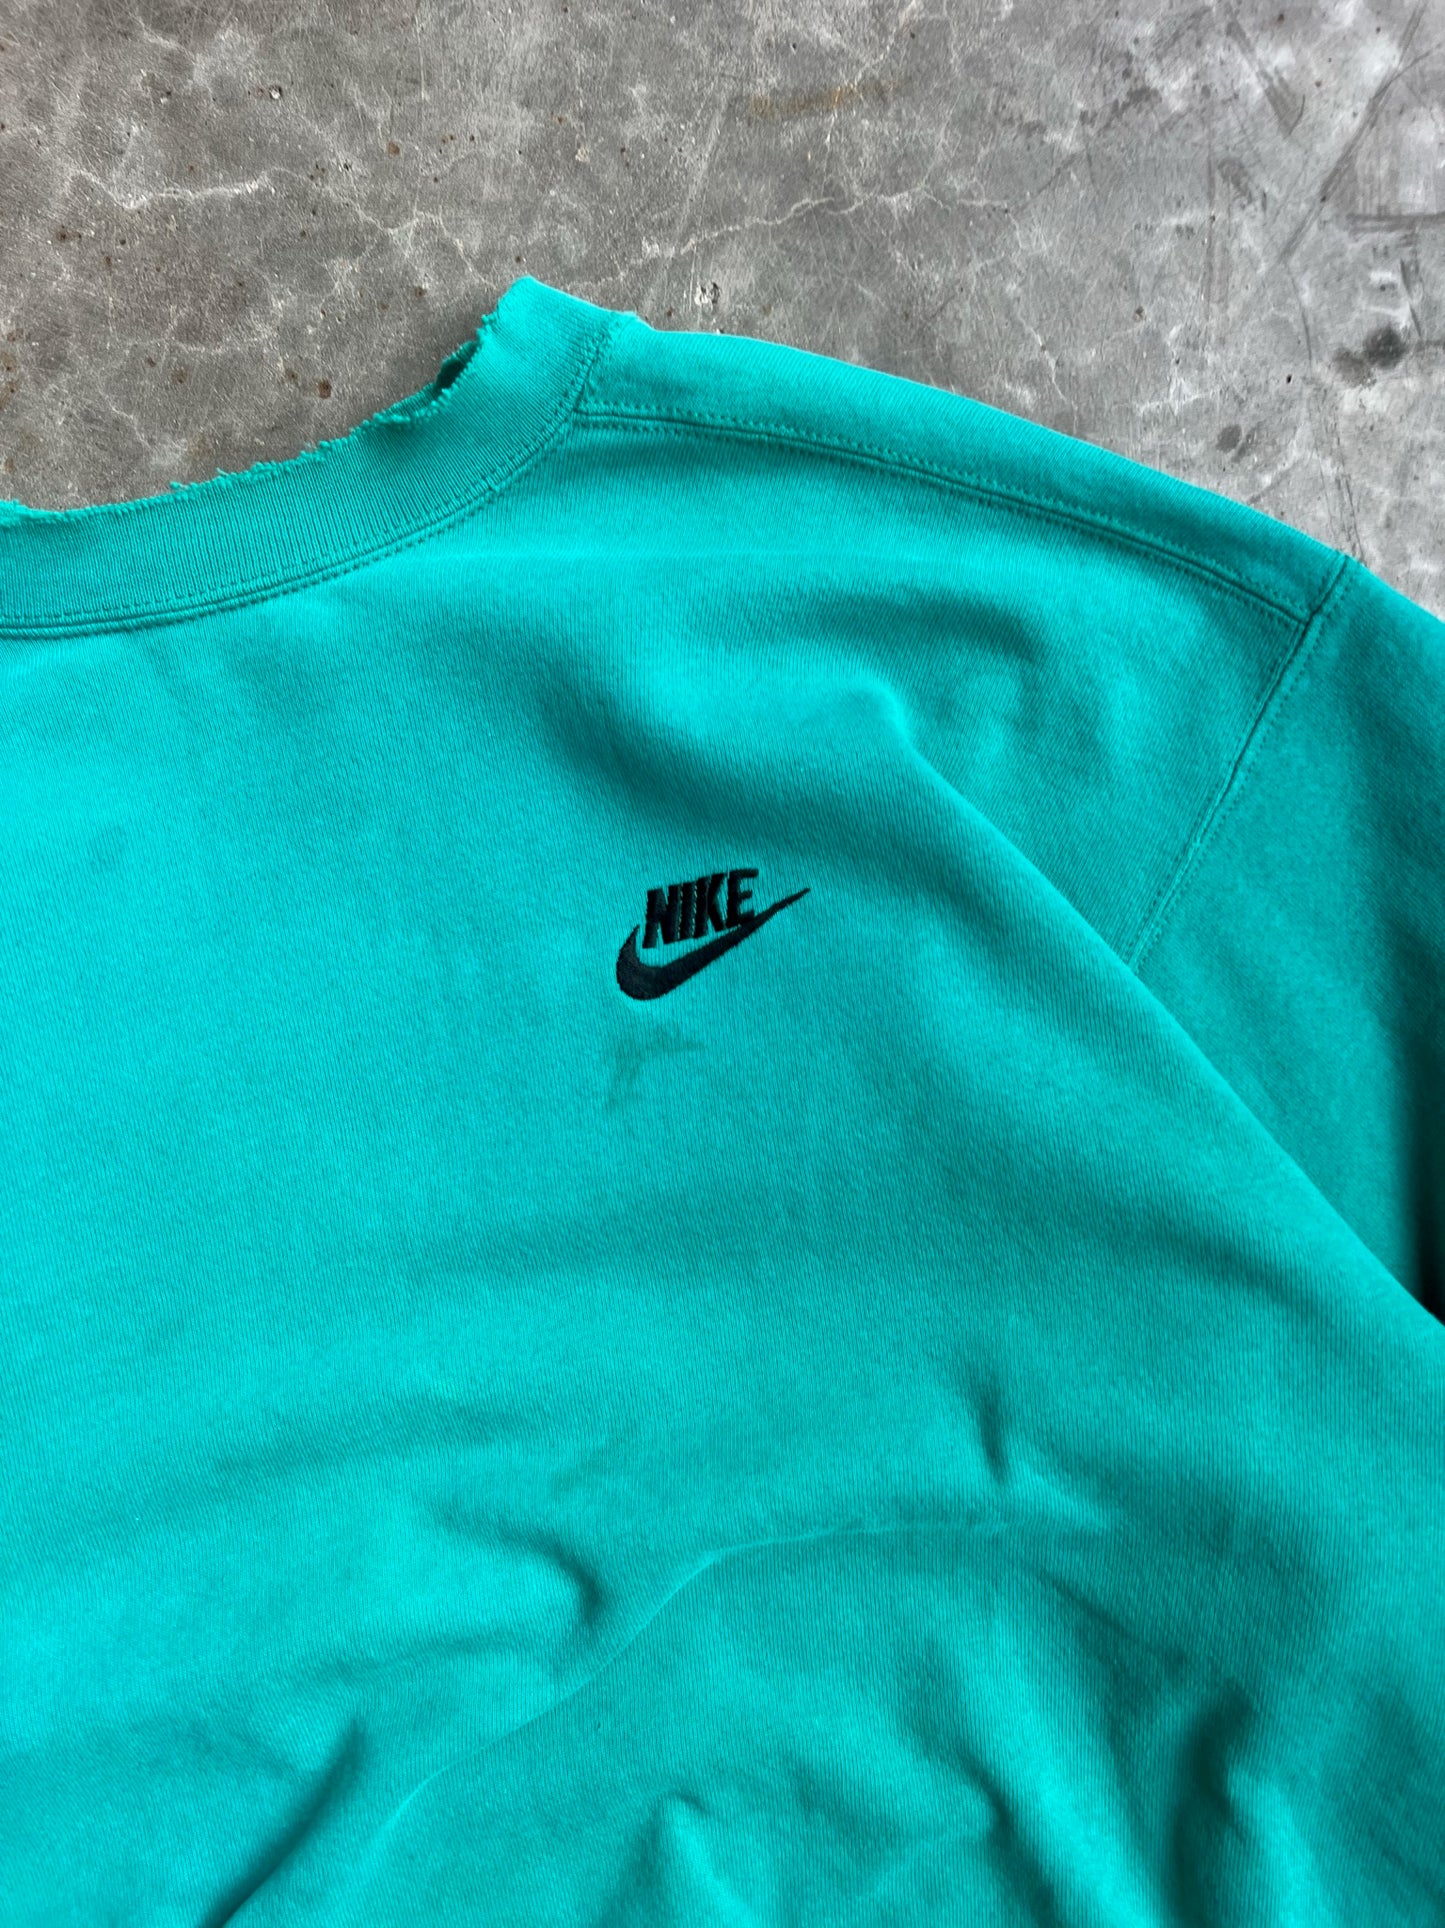 Vintage 90s Teal Nike Crew - M